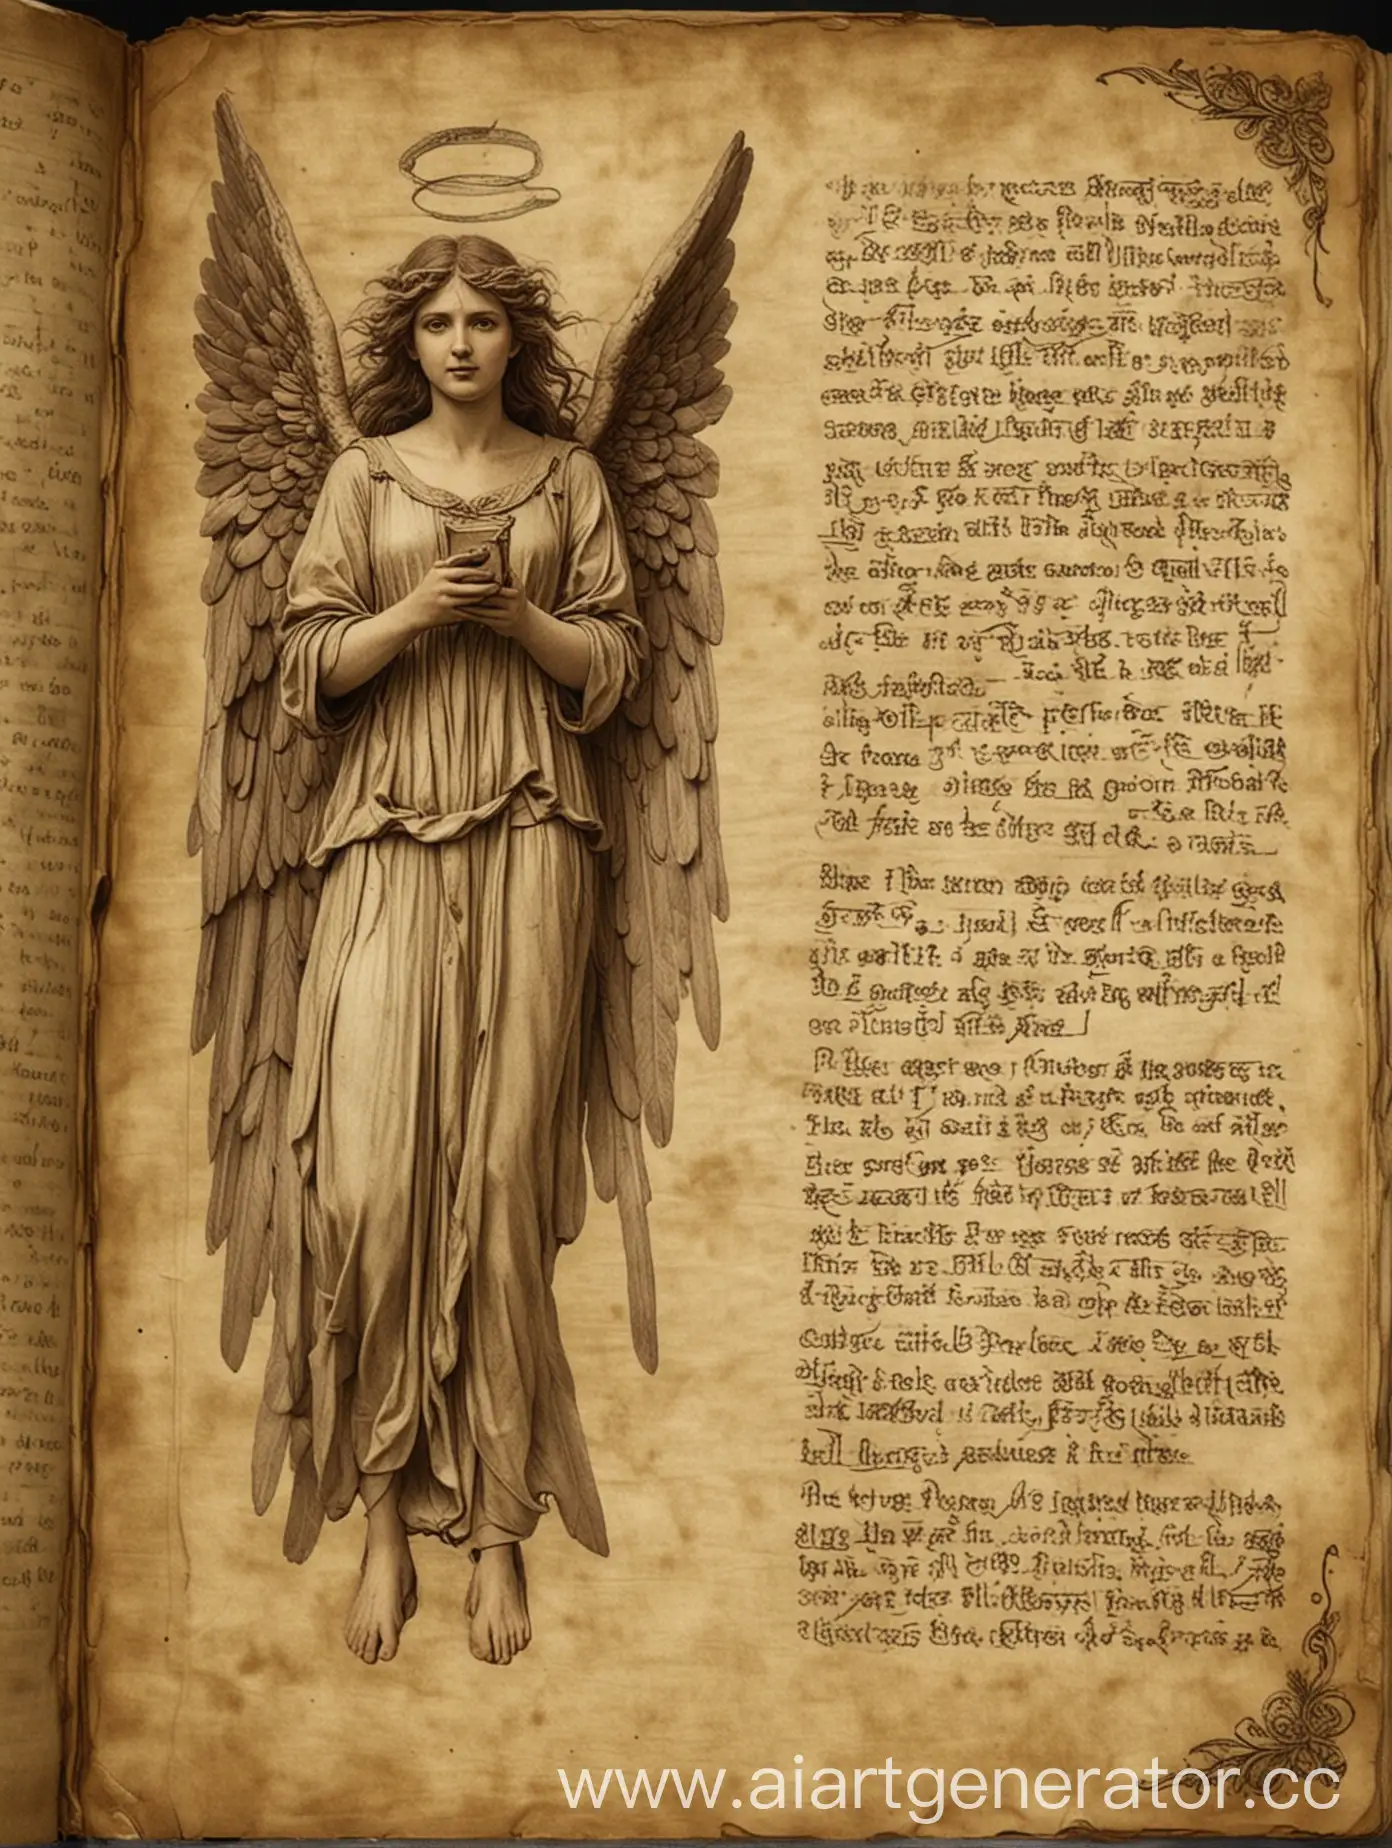 Старинный Дневник Где Описываются Паранормальные Существа Который Открыт На Странице С Описанием Ангела
